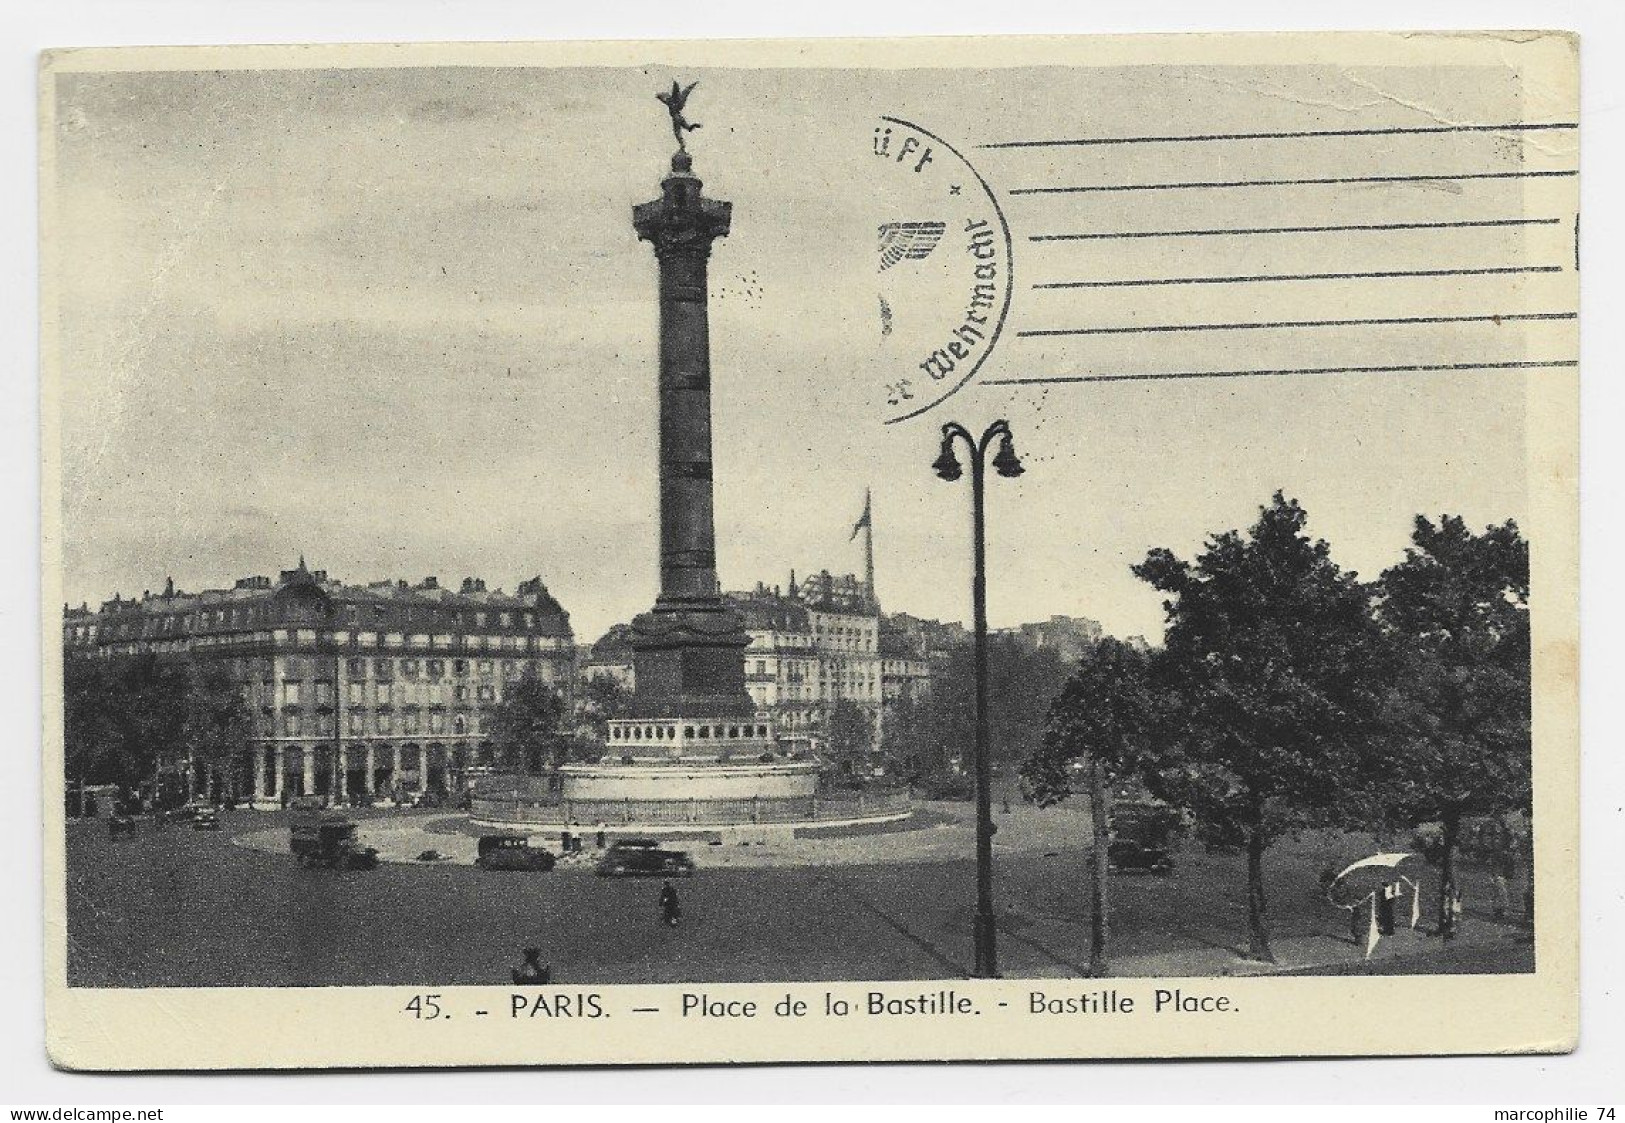 FRANCE CARTE EN FM DE PARIS 19.X.1940 ADRESSEE SUISSE CAMP MILITAIRE INTERNEMENT THORIGEN BERNE SUISSE + FELPOST CENSURE - Annullamenti